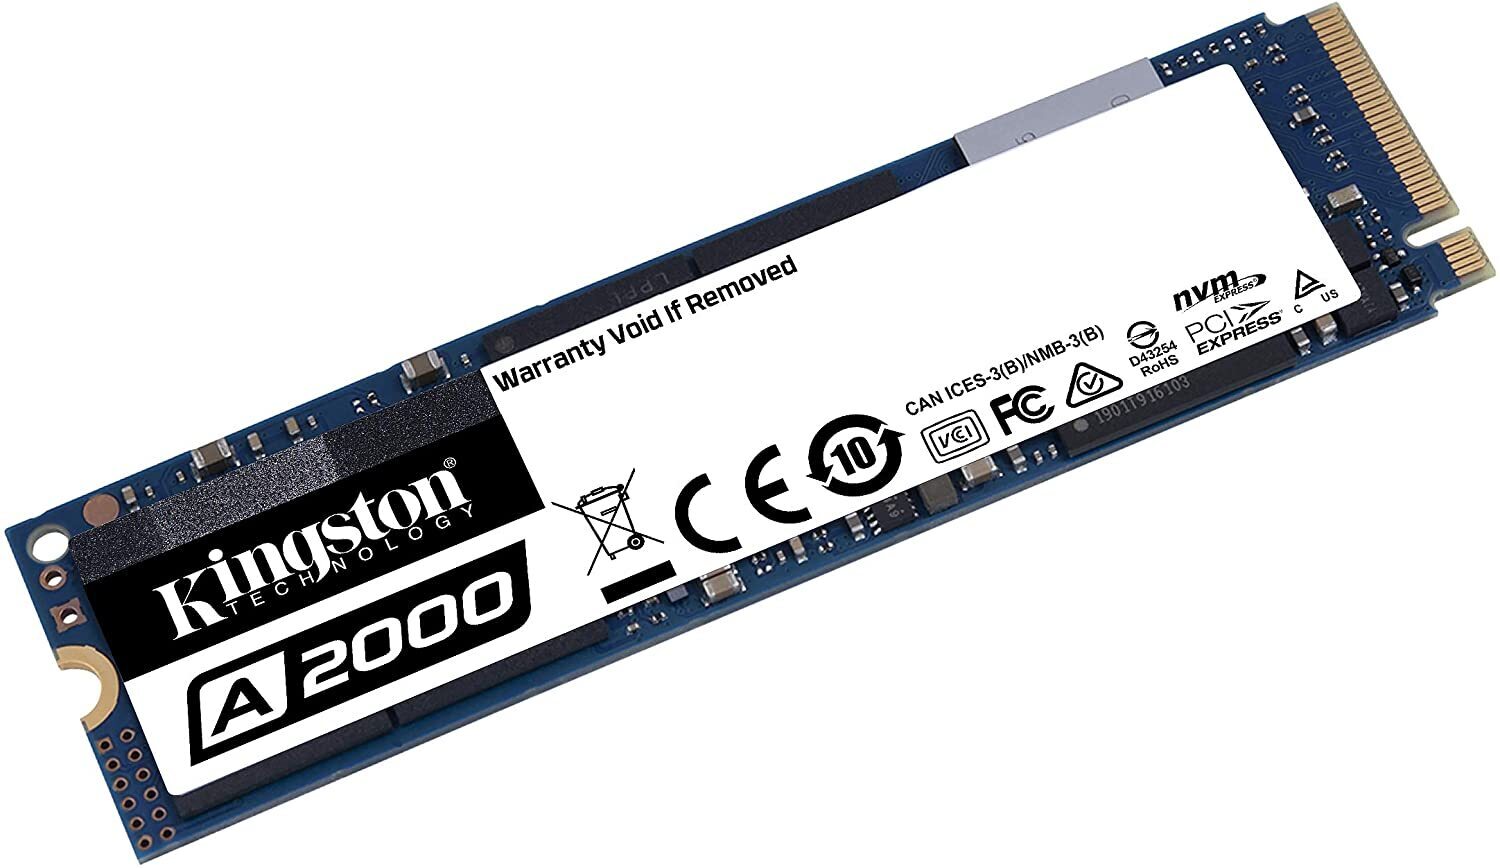 SSD NVME Kingston 250GB A2000 M.2 2280 PCI Nvme Internal SSD SA2000M8/1000G up to 2000MB/s